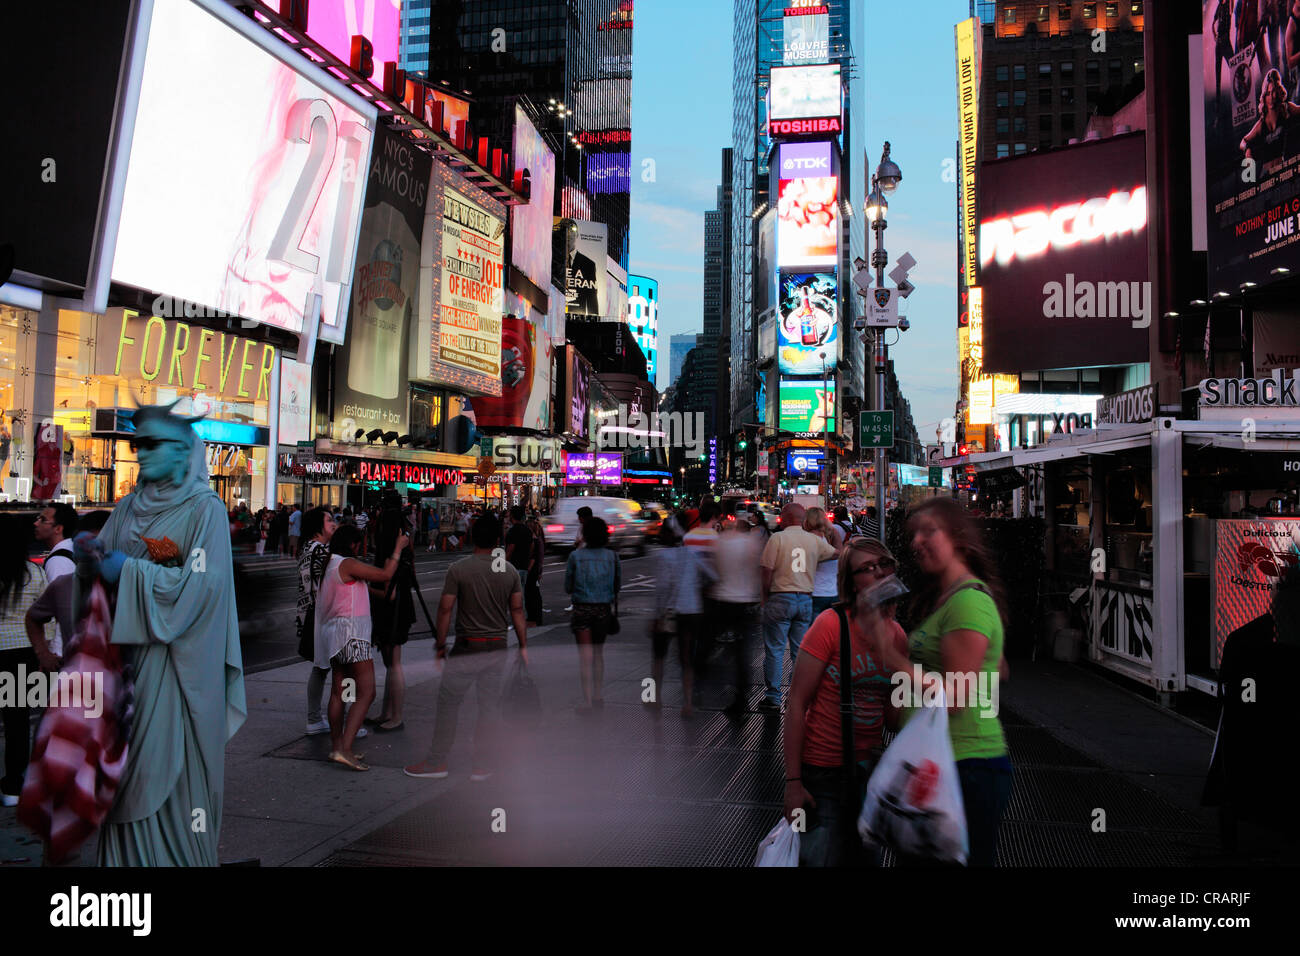 La VILLE DE NEW YORK, USA - 8 juin : temps d'exposition des personnes à Times Square. 8 juin 2012 à New York City, USA Banque D'Images